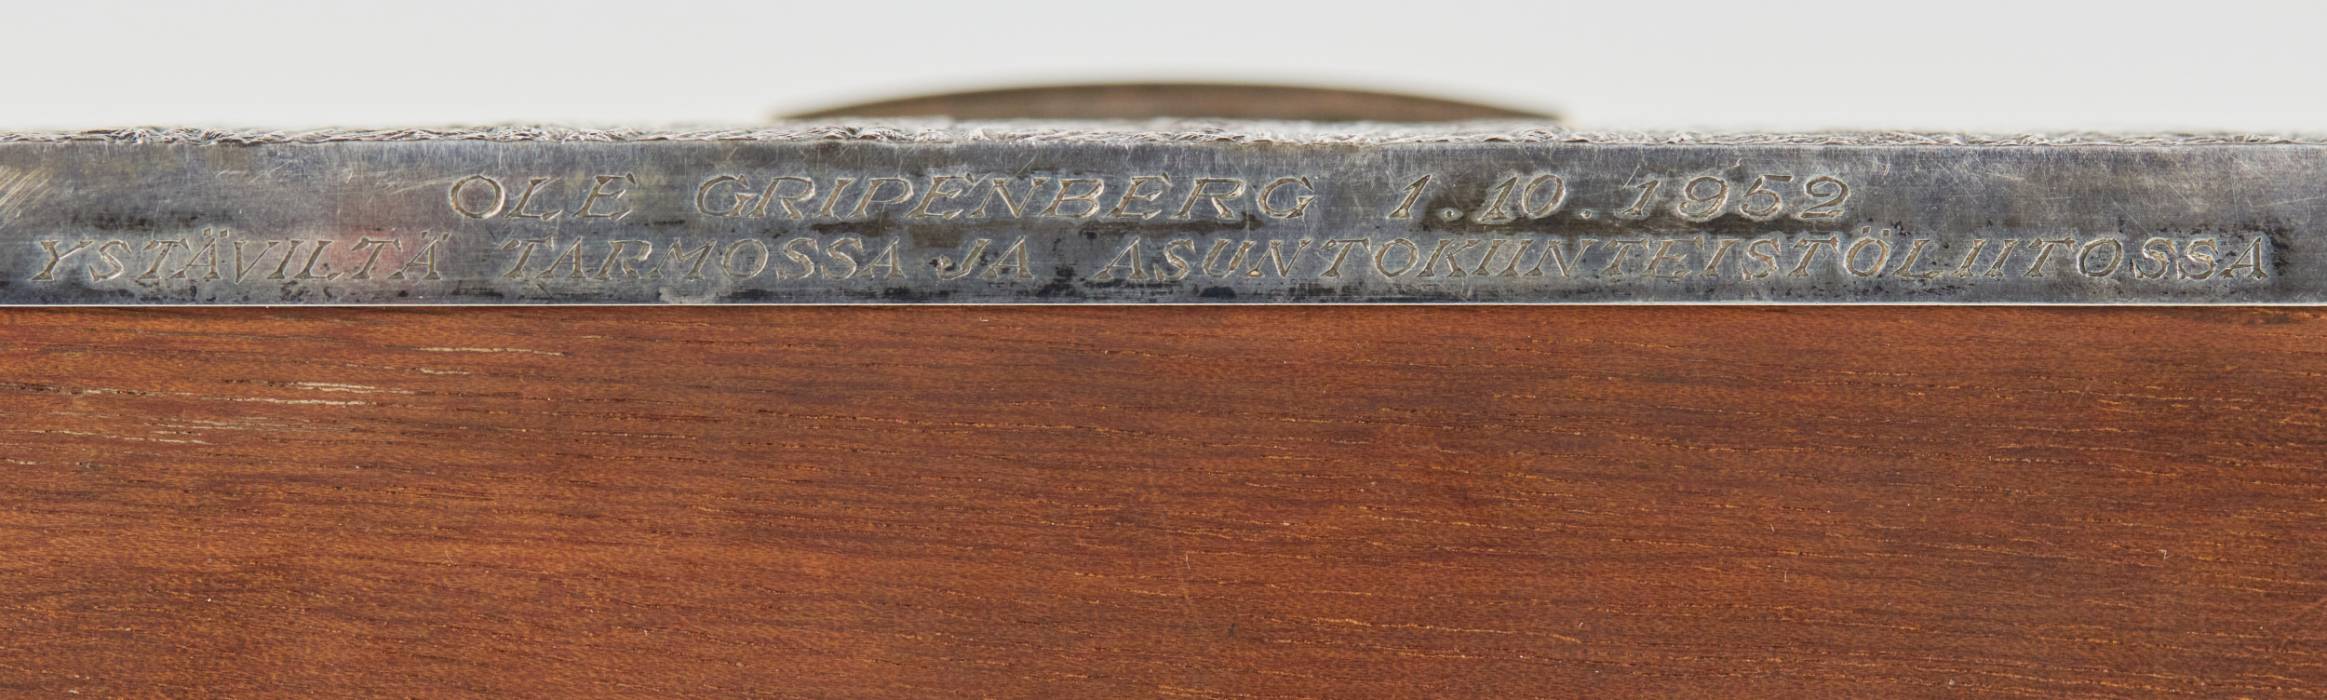 Серебряная коробка для папирос «Самородок» Финляндия. Начало 20 века.